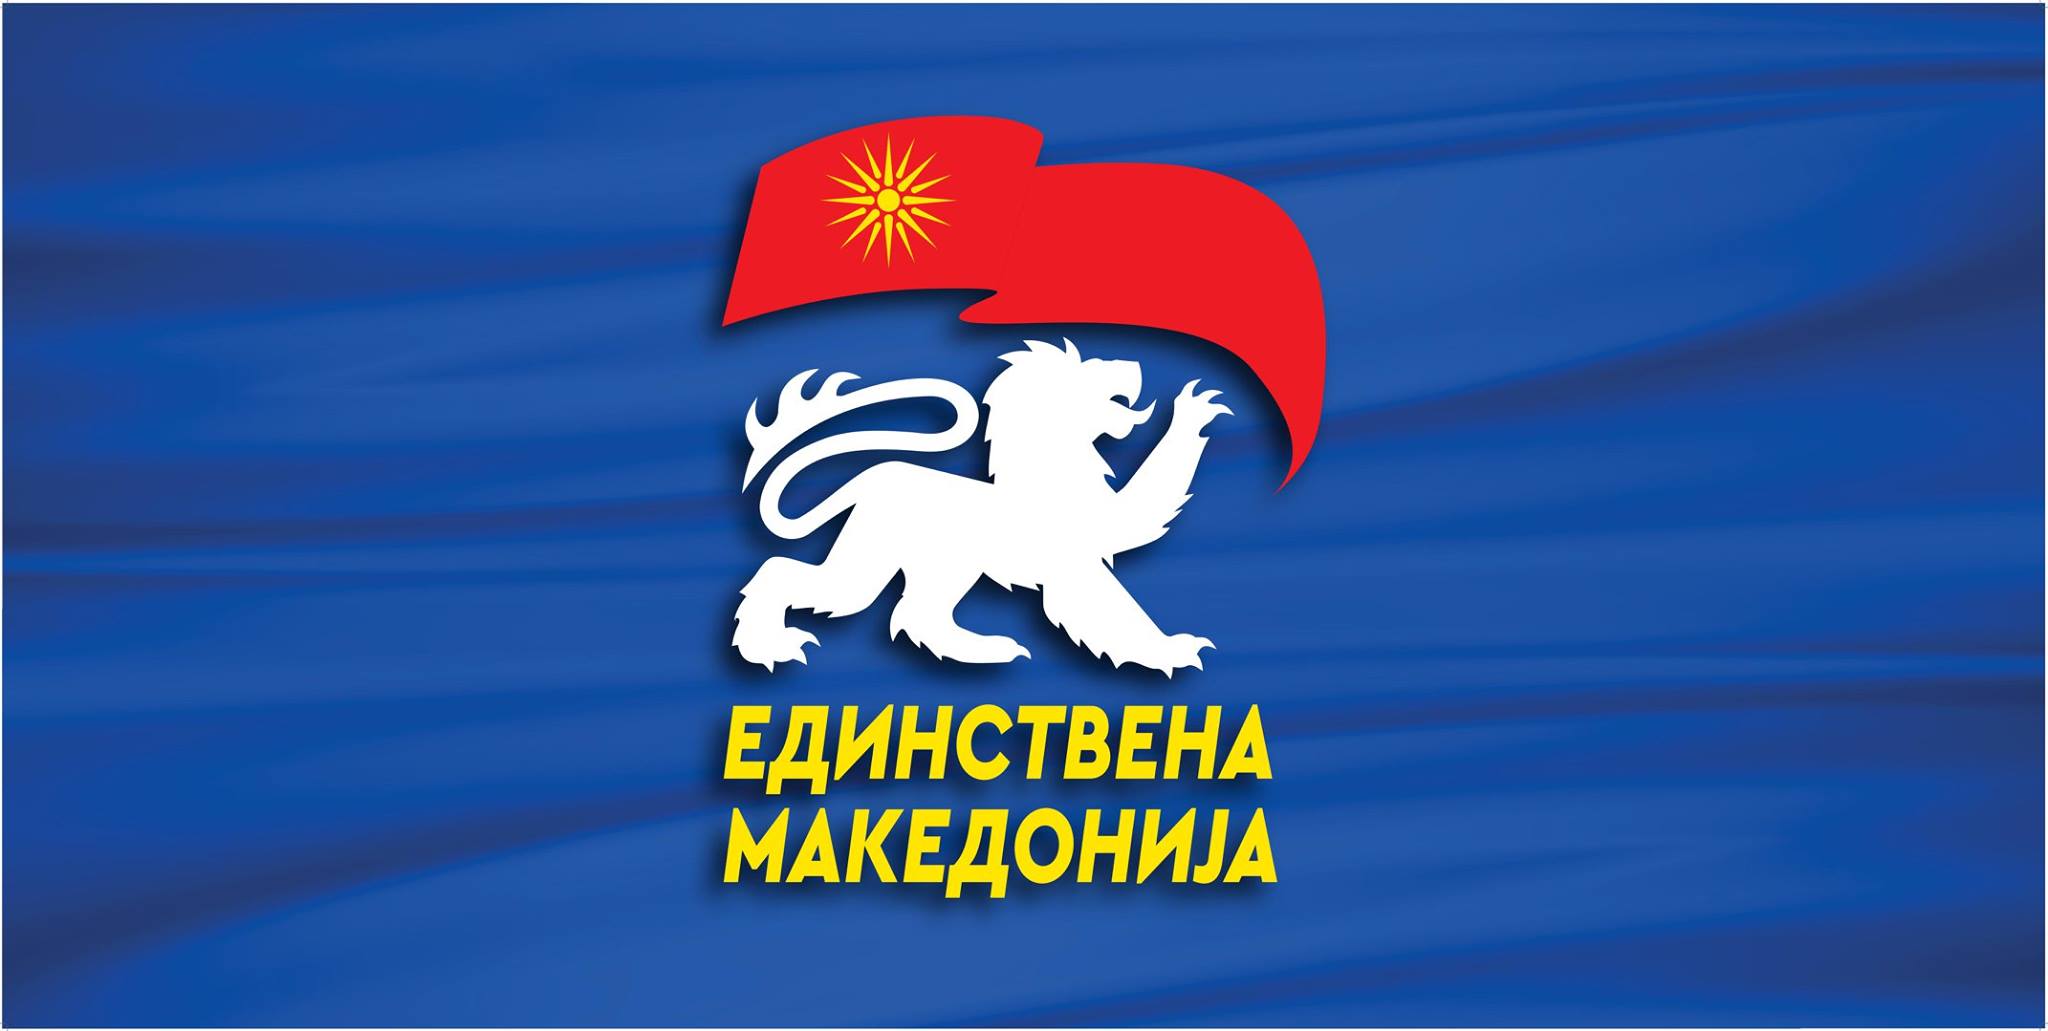 Контакт Единствена Македонија